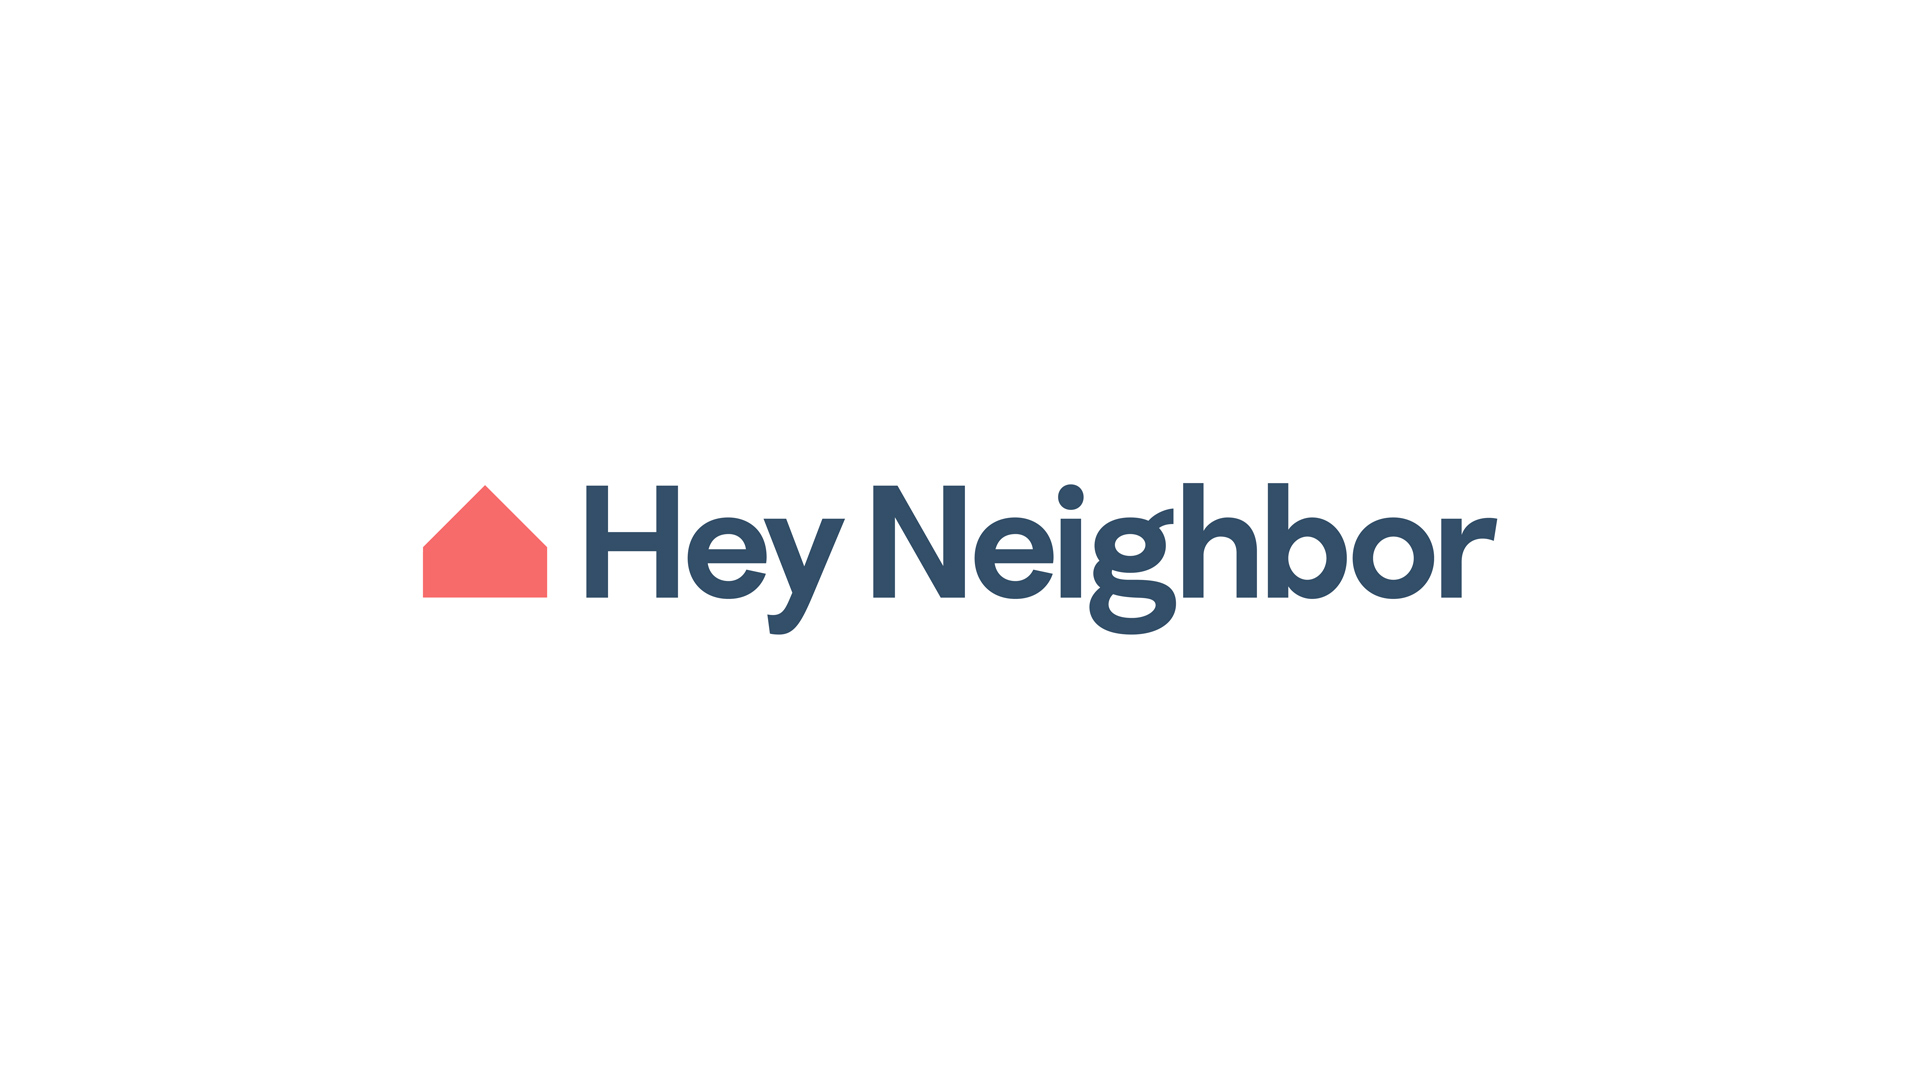 Hey Neighbor logo by Jeremy Garcia